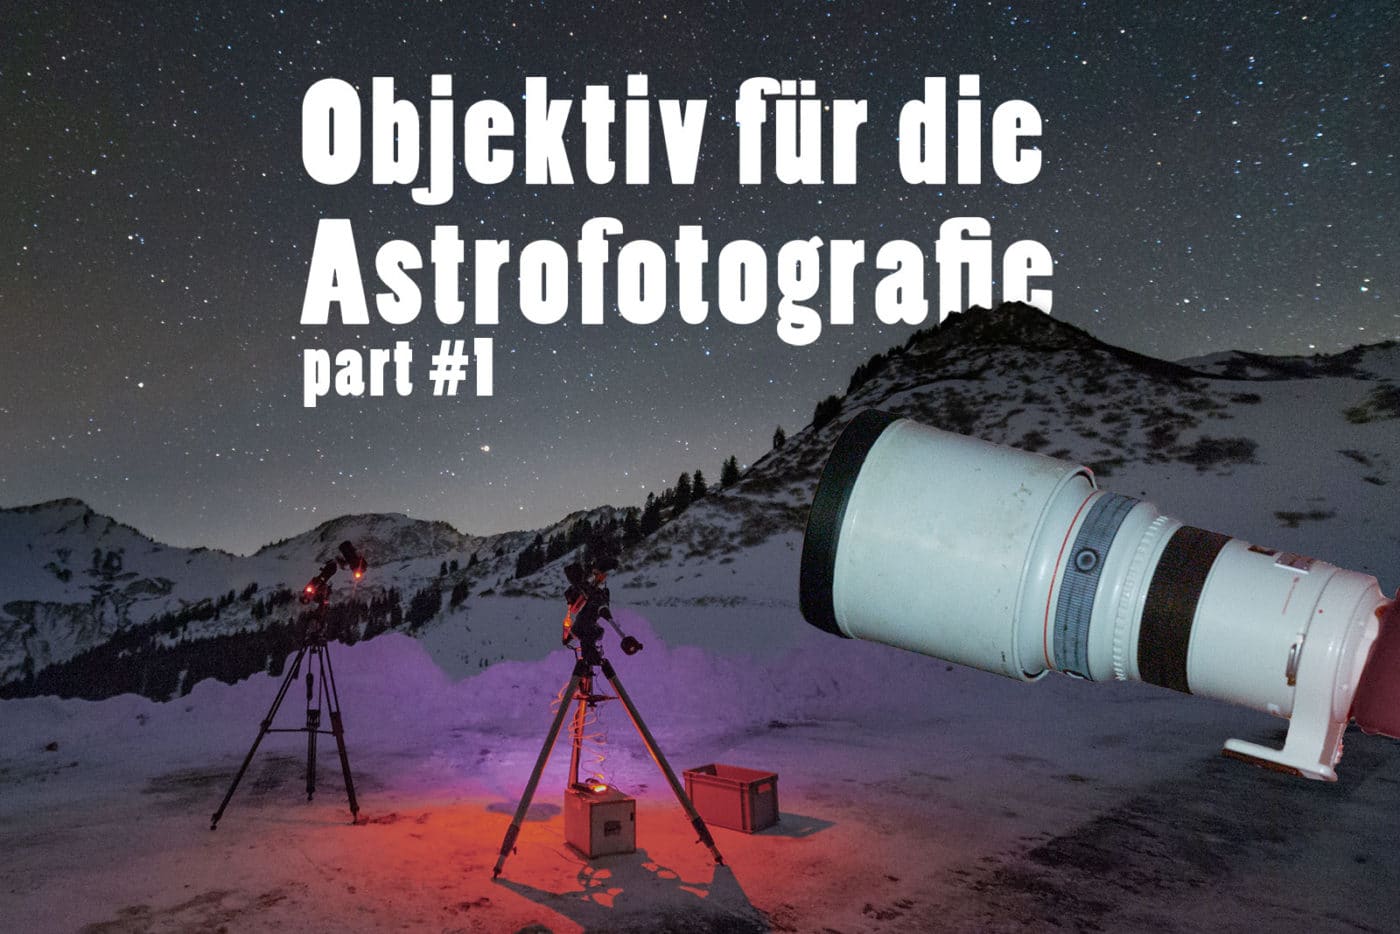 Das beste Objektiv für die Astrofotografie, Objektiv für Milchstraße